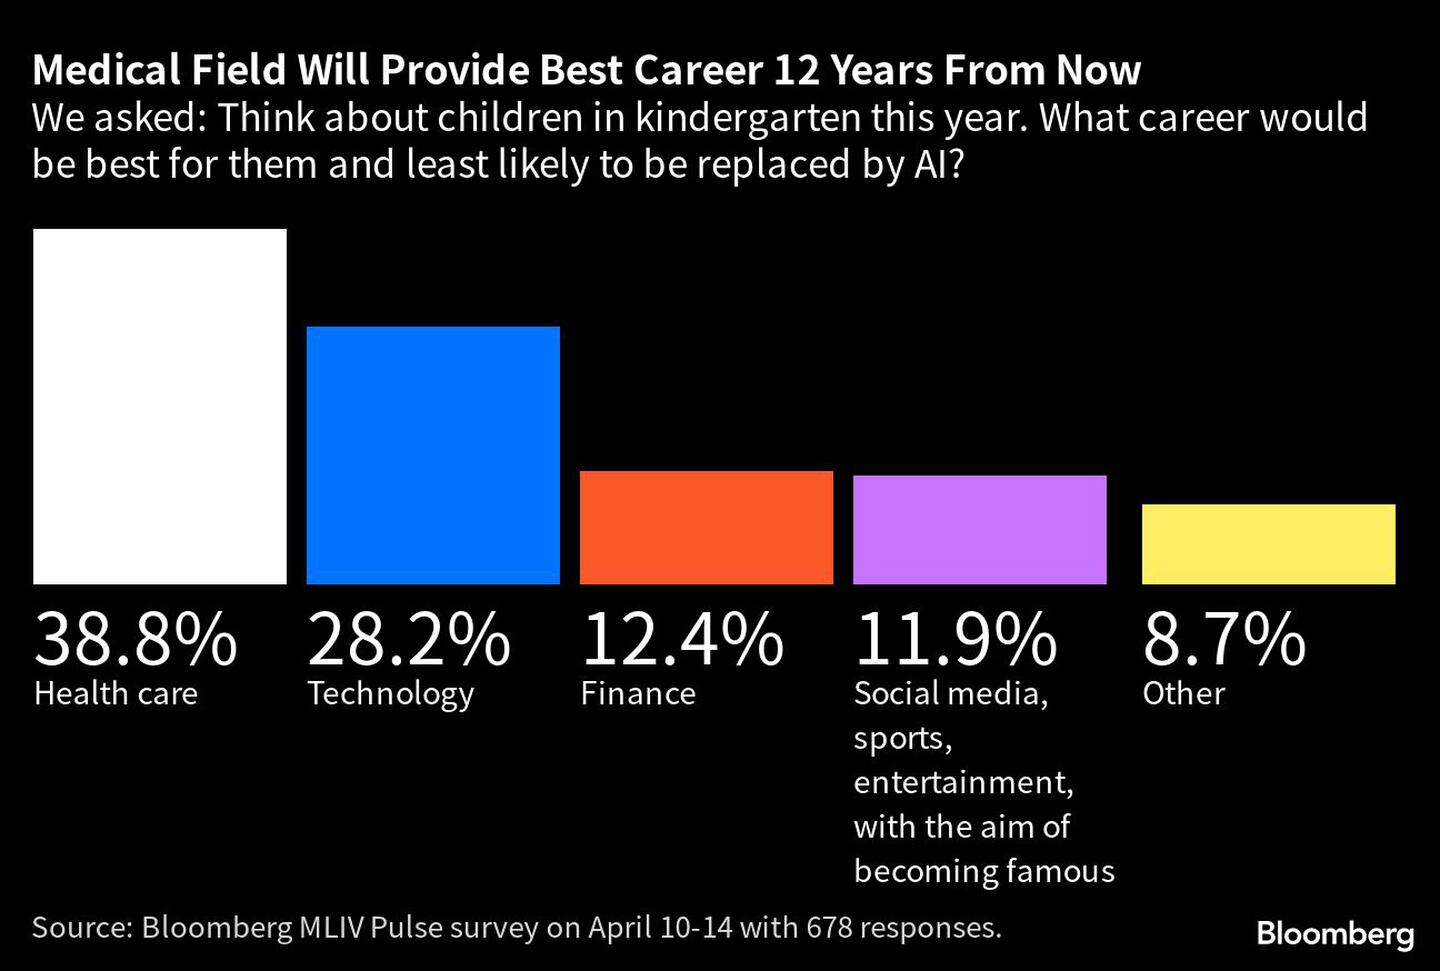 El campo de la medicina ofrecerá la mejor carrera dentro de 12 años | Preguntamos: Piensa en los niños que van a la guardería este año. ¿Qué carrera sería la mejor para ellos y la menos susceptible de ser sustituida por la IA?dfd